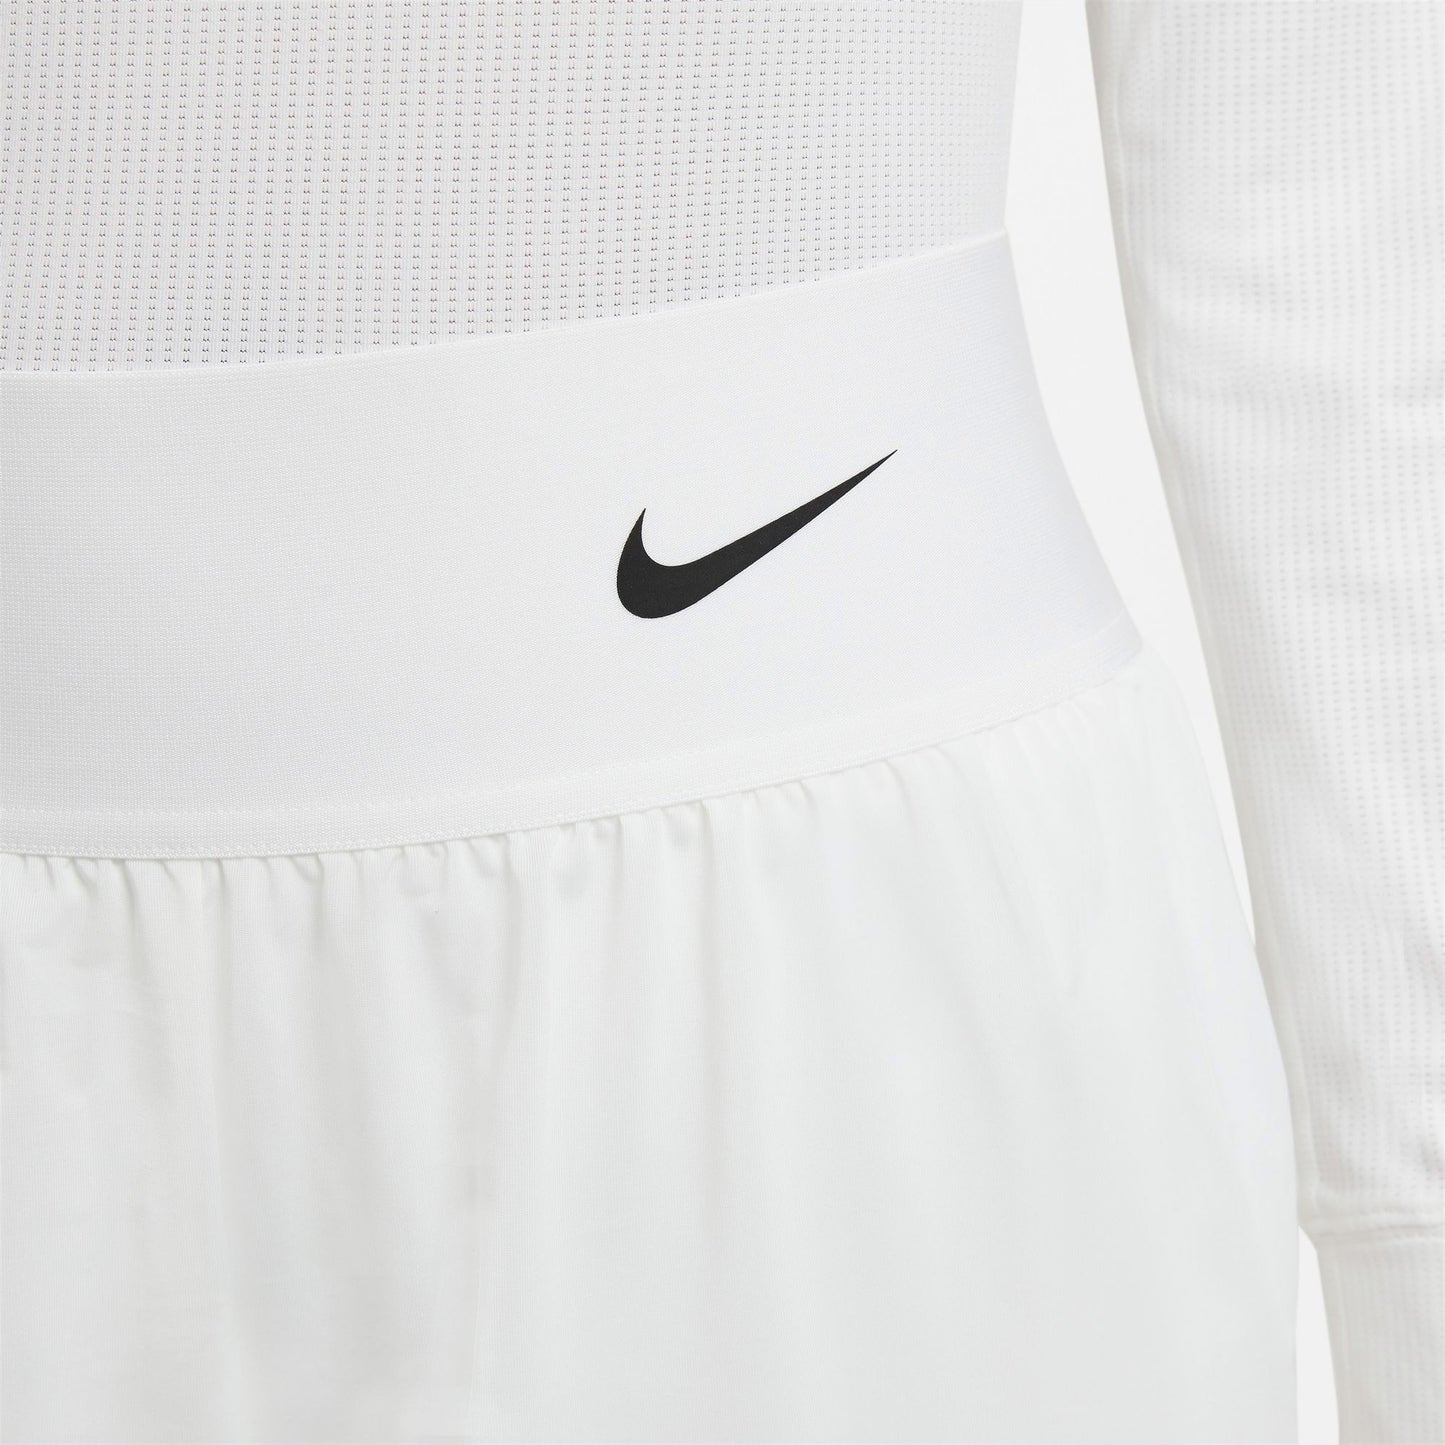 Nike Dri-FIT Advantage Women's Tennis Shorts White (4)